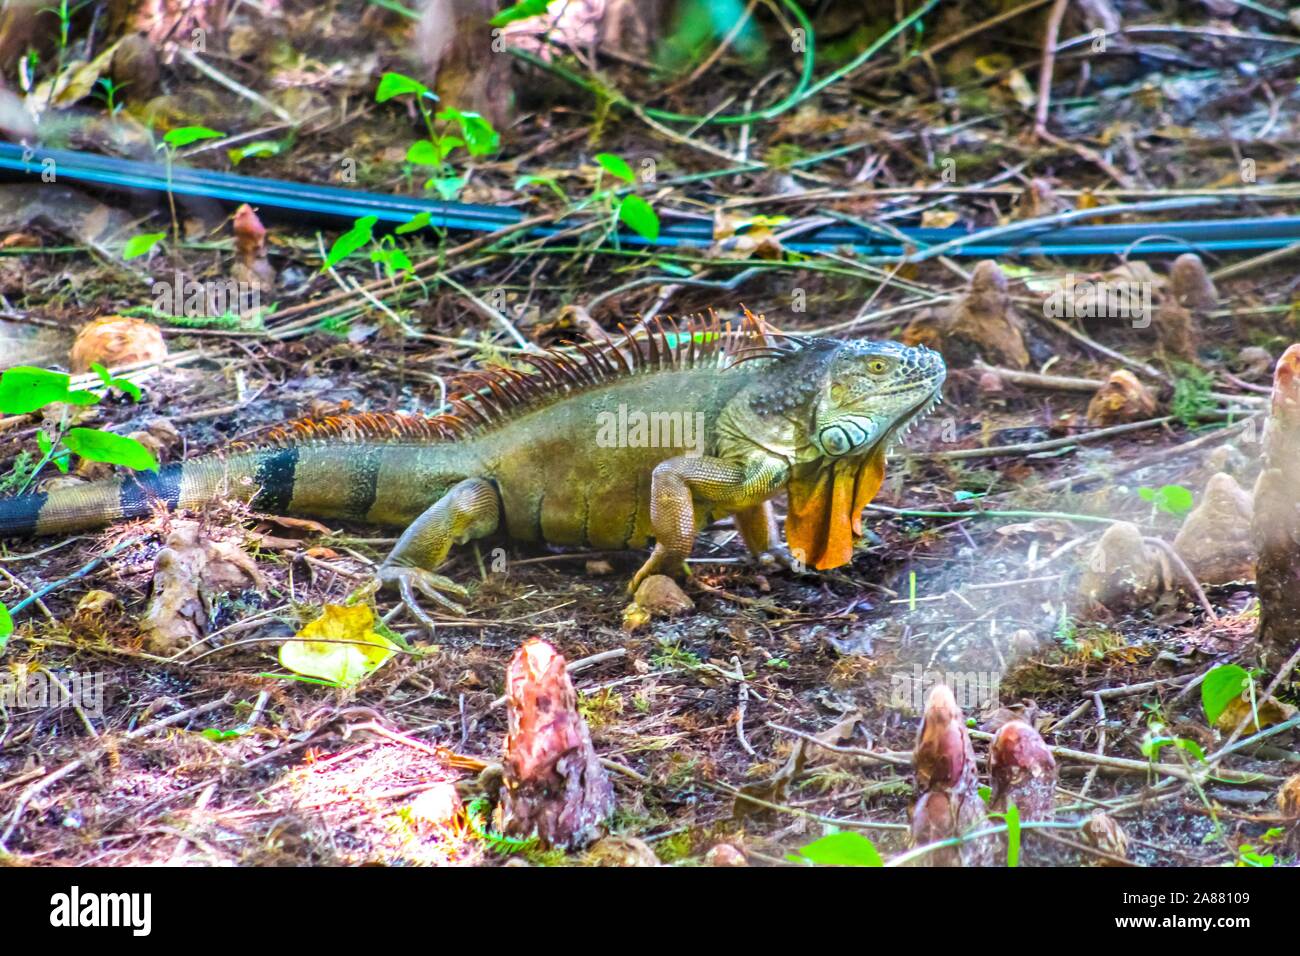 Oleta River State Park in Miami, Florida - invasive green iguanas cause damage to environment Stock Photo